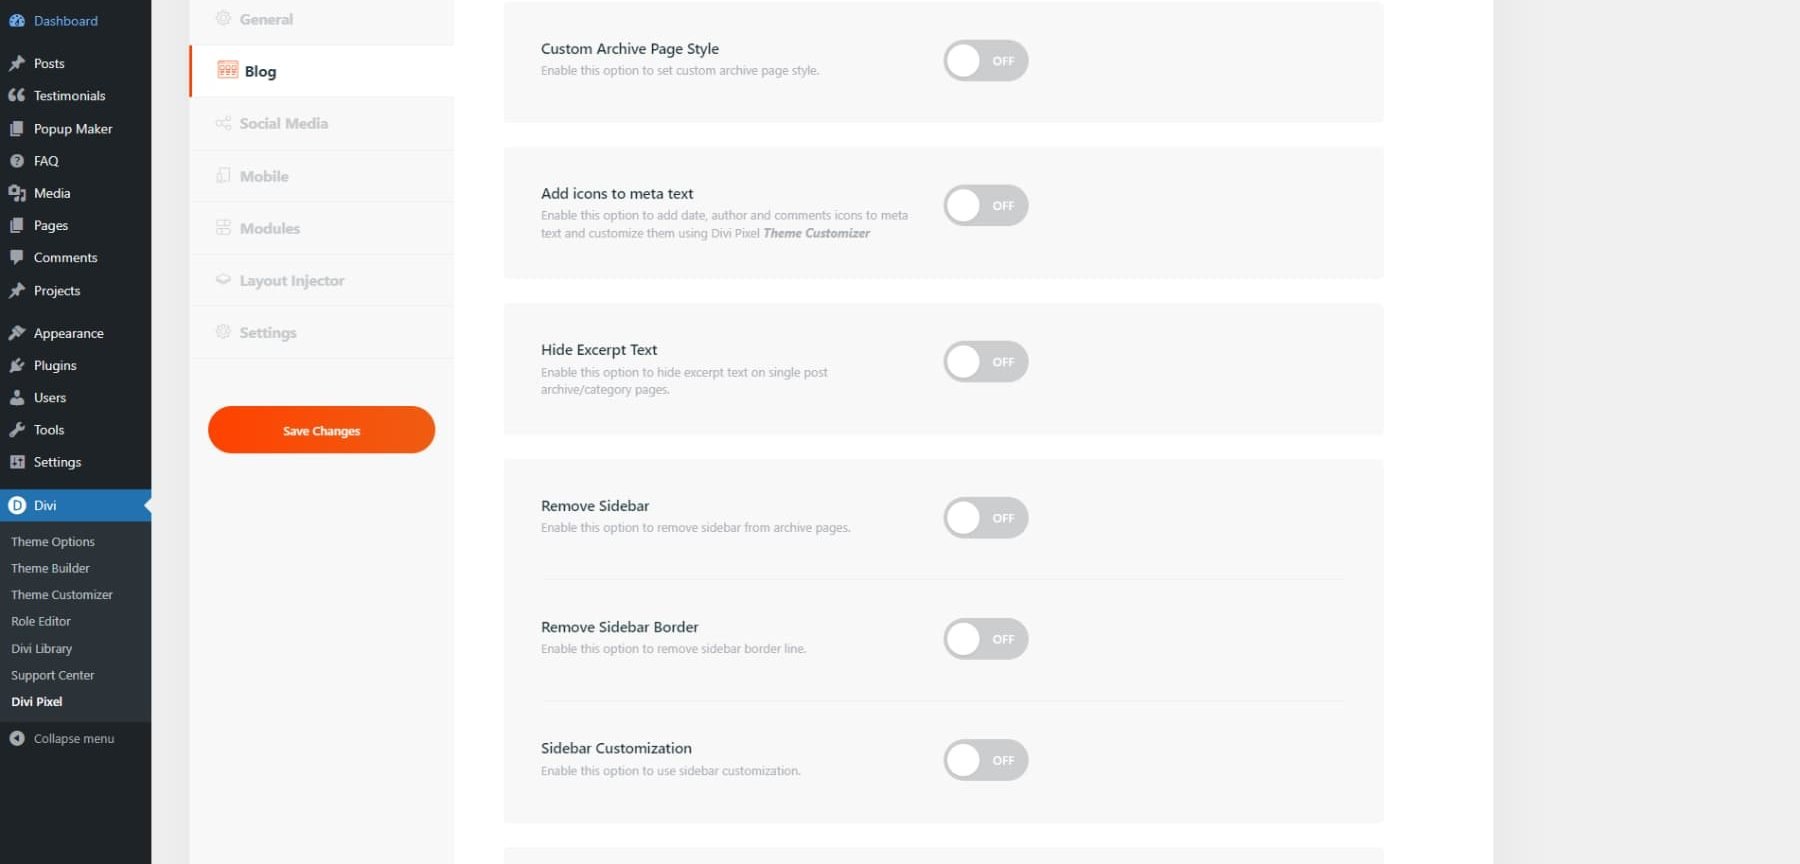 A screenshot of Divi Pixel's settings' blog tab